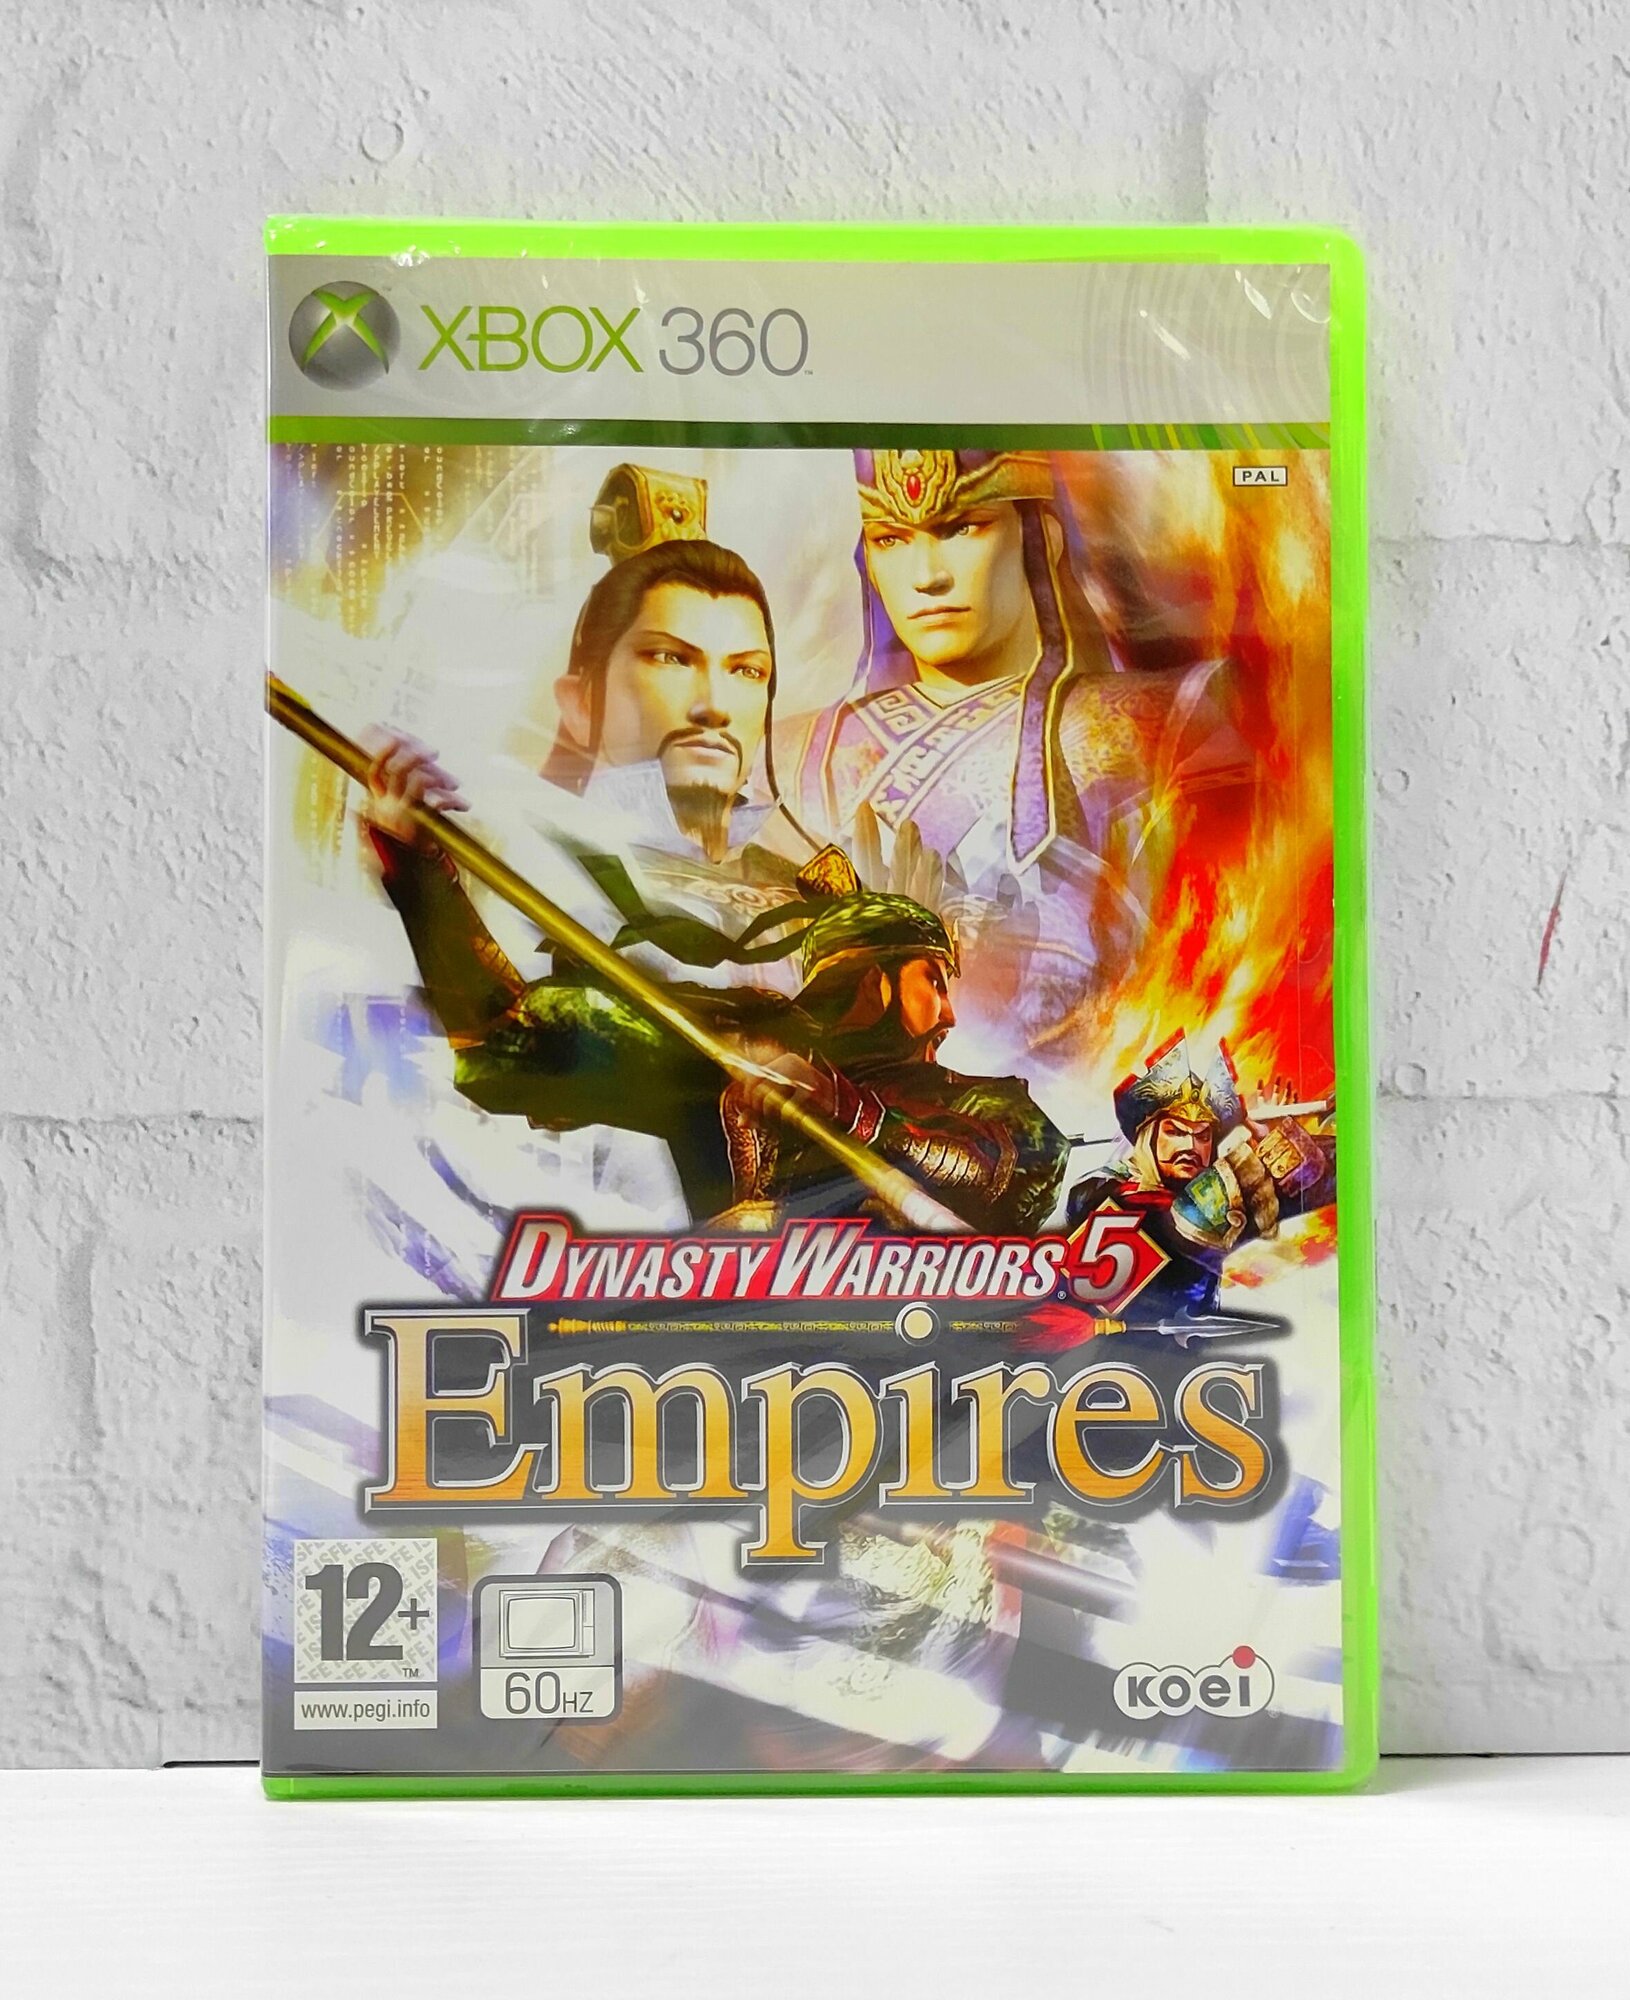 Dynasty Warriors 5 Empires Видеоигра на диске Xbox 360